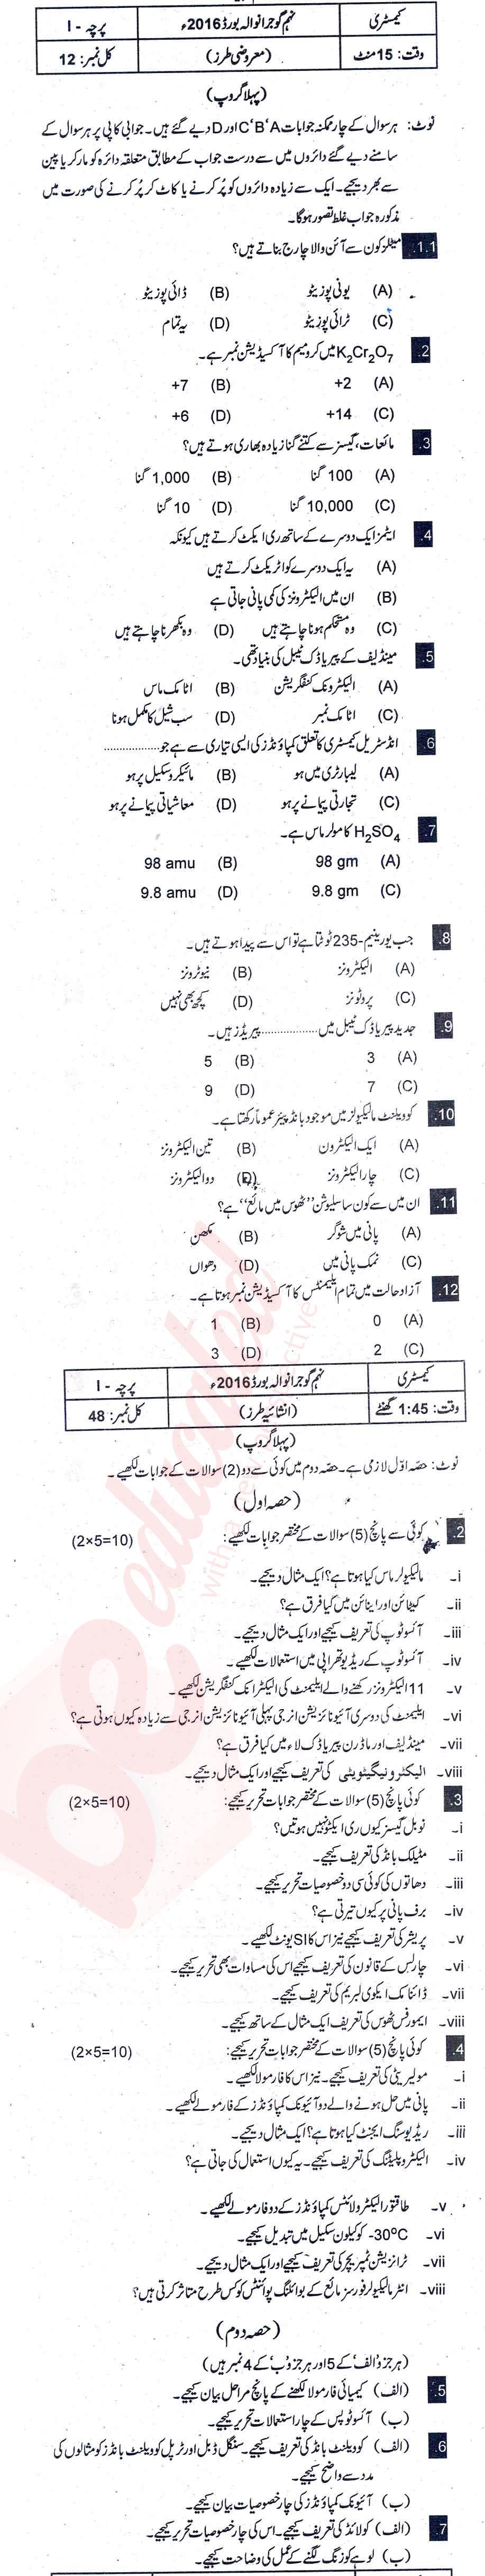 Chemistry 9th Urdu Medium Past Paper Group 1 BISE Gujranwala 2016